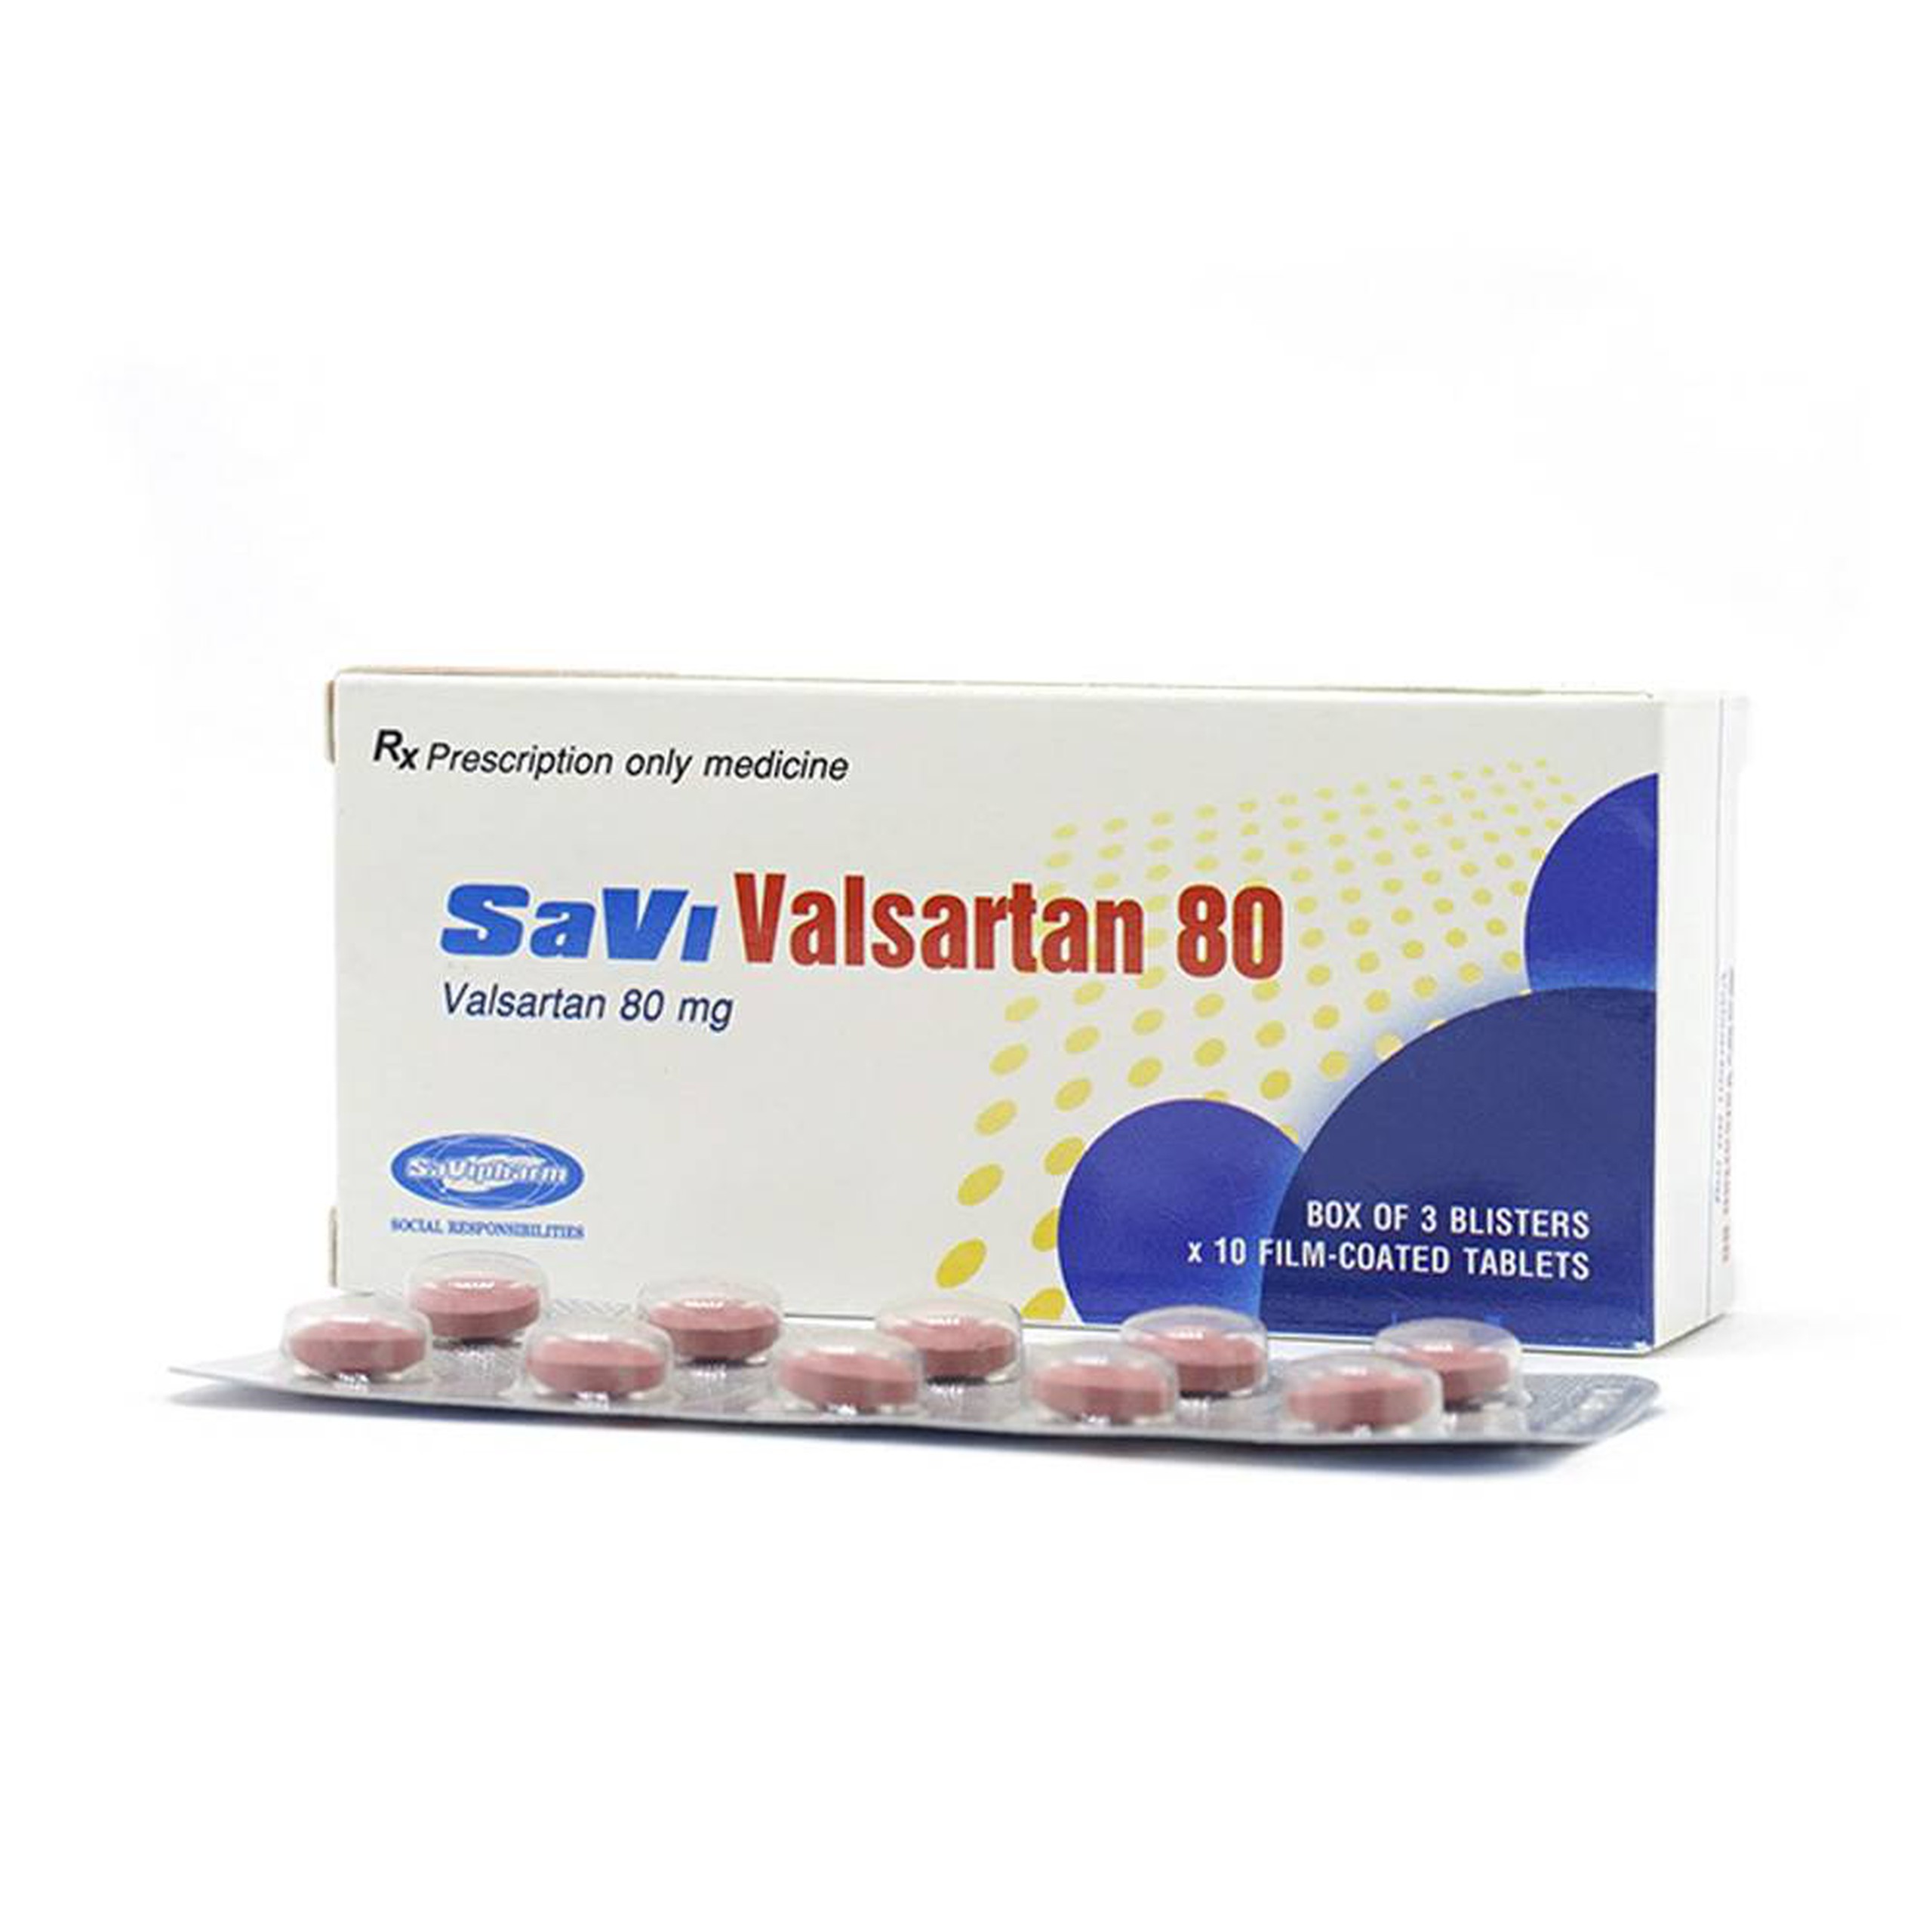 Thuốc Savi Valsartan 80 điều trị tăng huyết áp, nhồi máu cơ tim (3 vỉ x 10 viên)